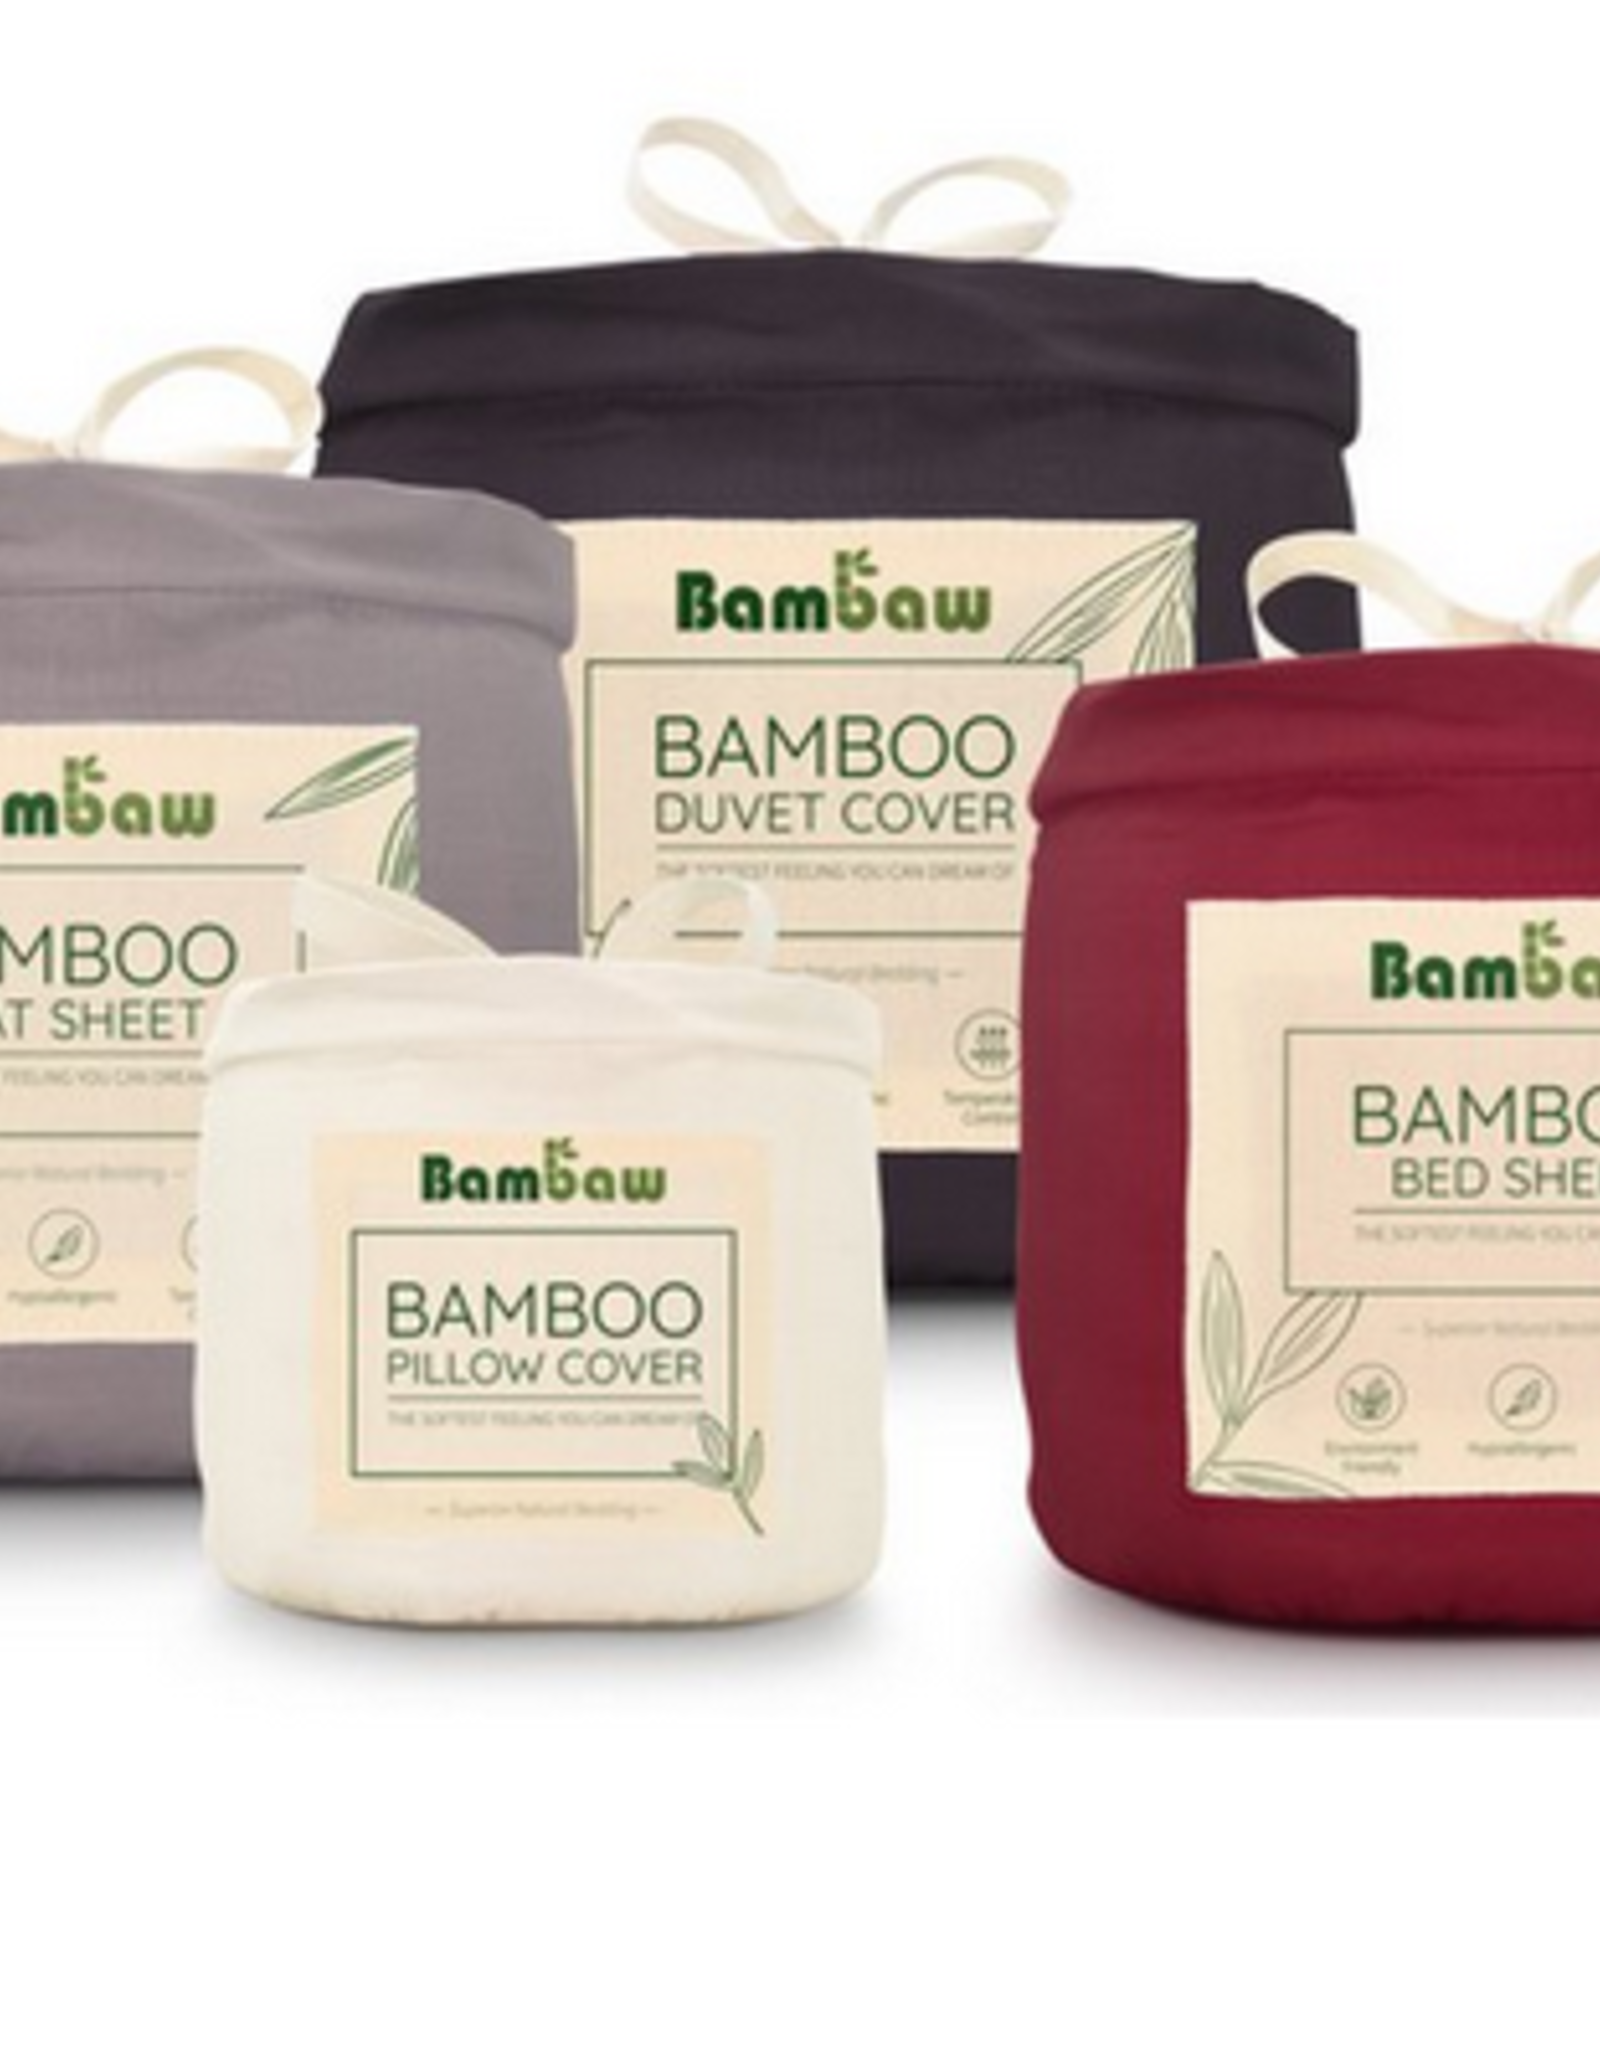 Bambaw Bamboe bovenlaken / flatsheet